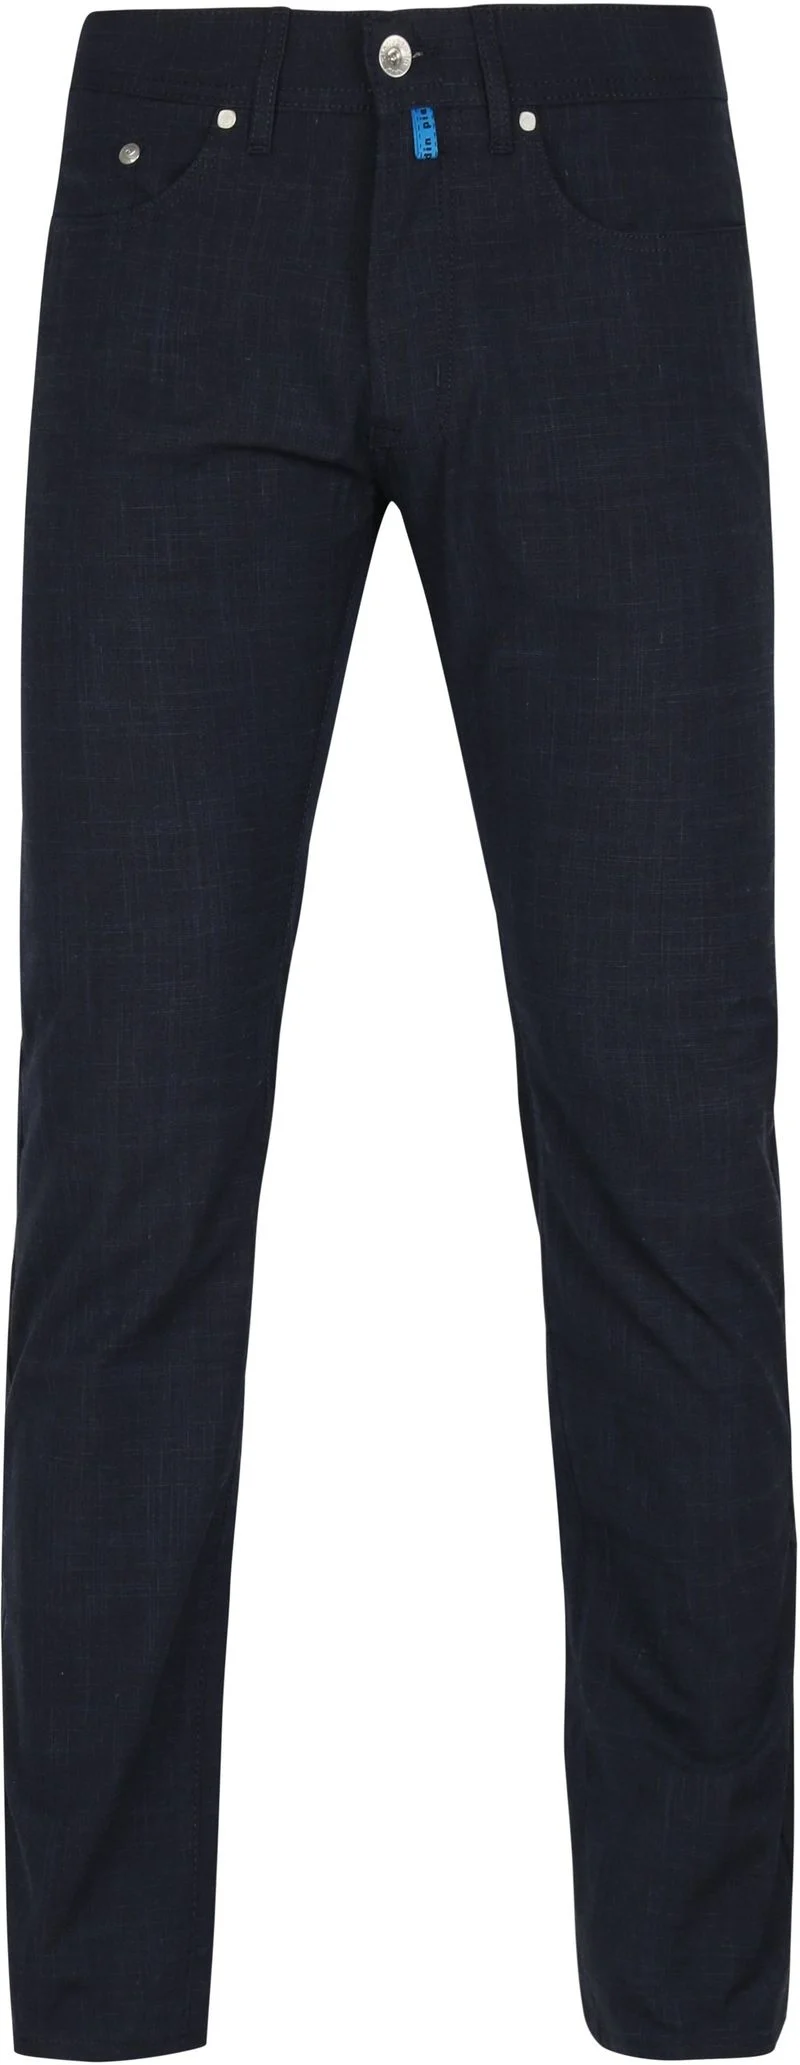 Pierre Cardin Jeans Lyon Travel Comfort Dunkelblau - Größe W 32 - L 34 günstig online kaufen